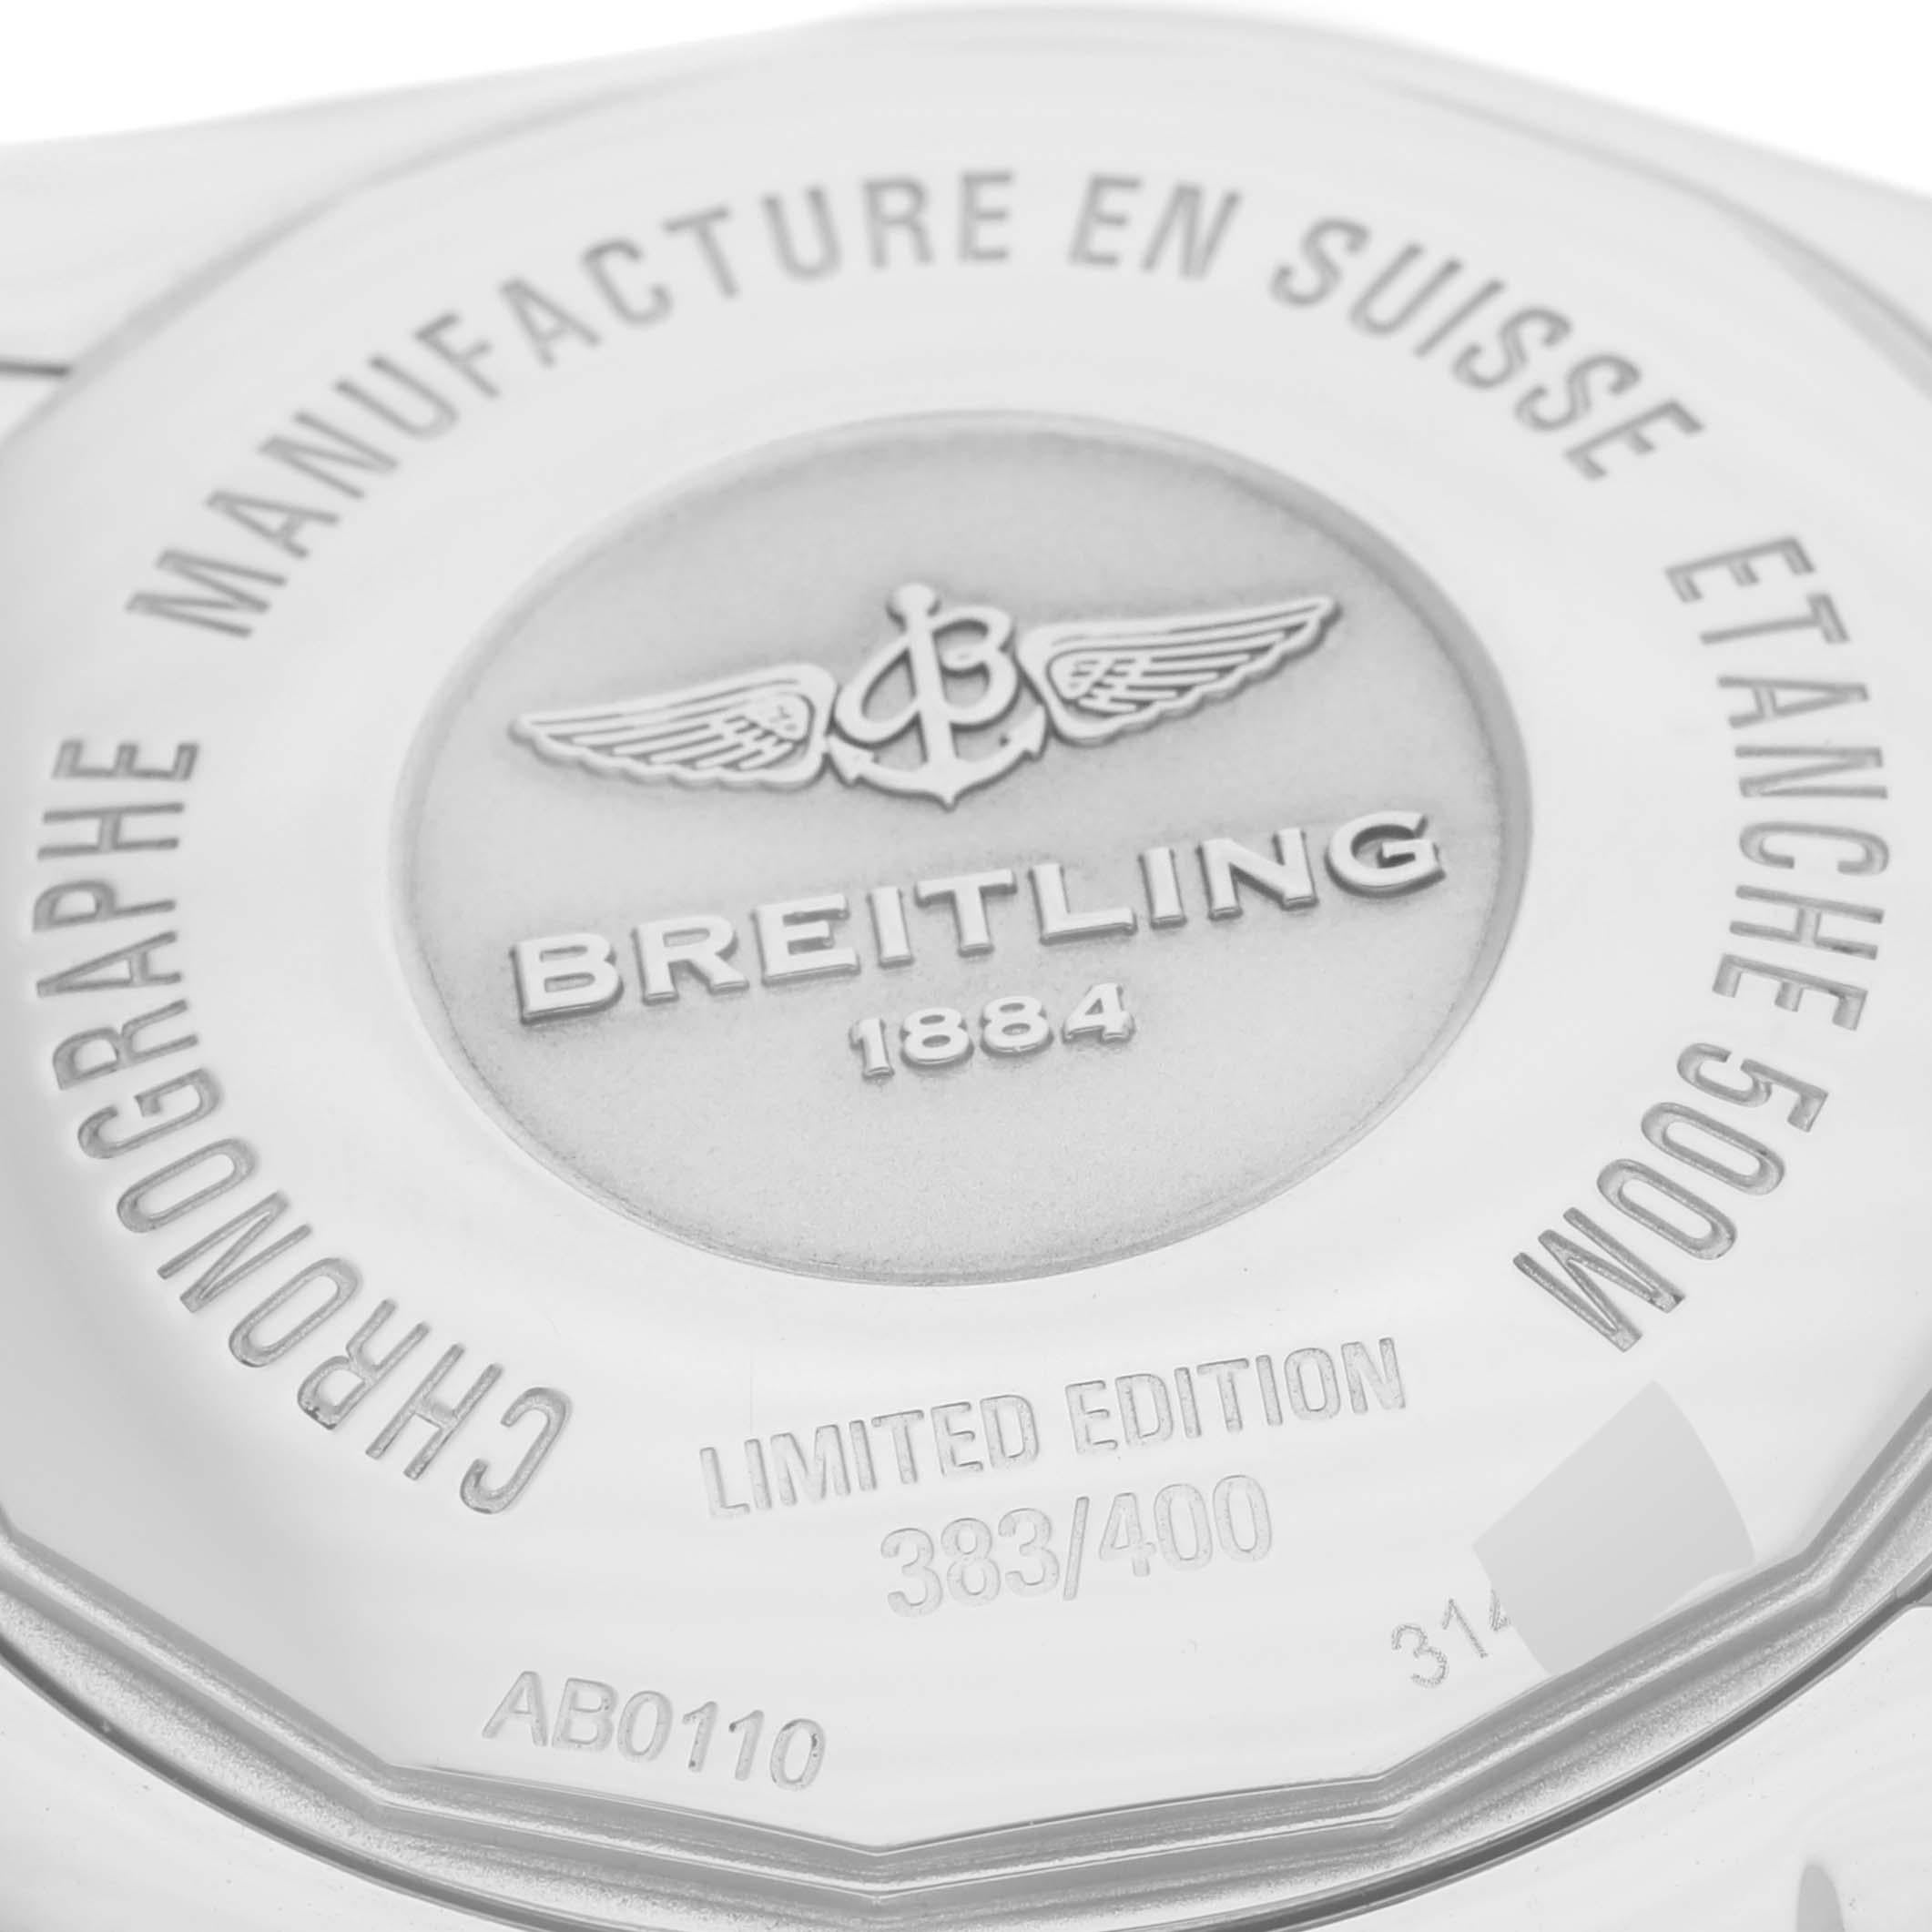 Breitling Chronomat 01 Blau Perlmutt Stahl Herrenuhr AB0110 Box Card. Automatisches Chronometerwerk mit automatischem Aufzug, offiziell zertifiziert. Chronographen-Funktion. Edelstahlgehäuse mit einem Durchmesser von 43.5 mm, verschraubter Krone und